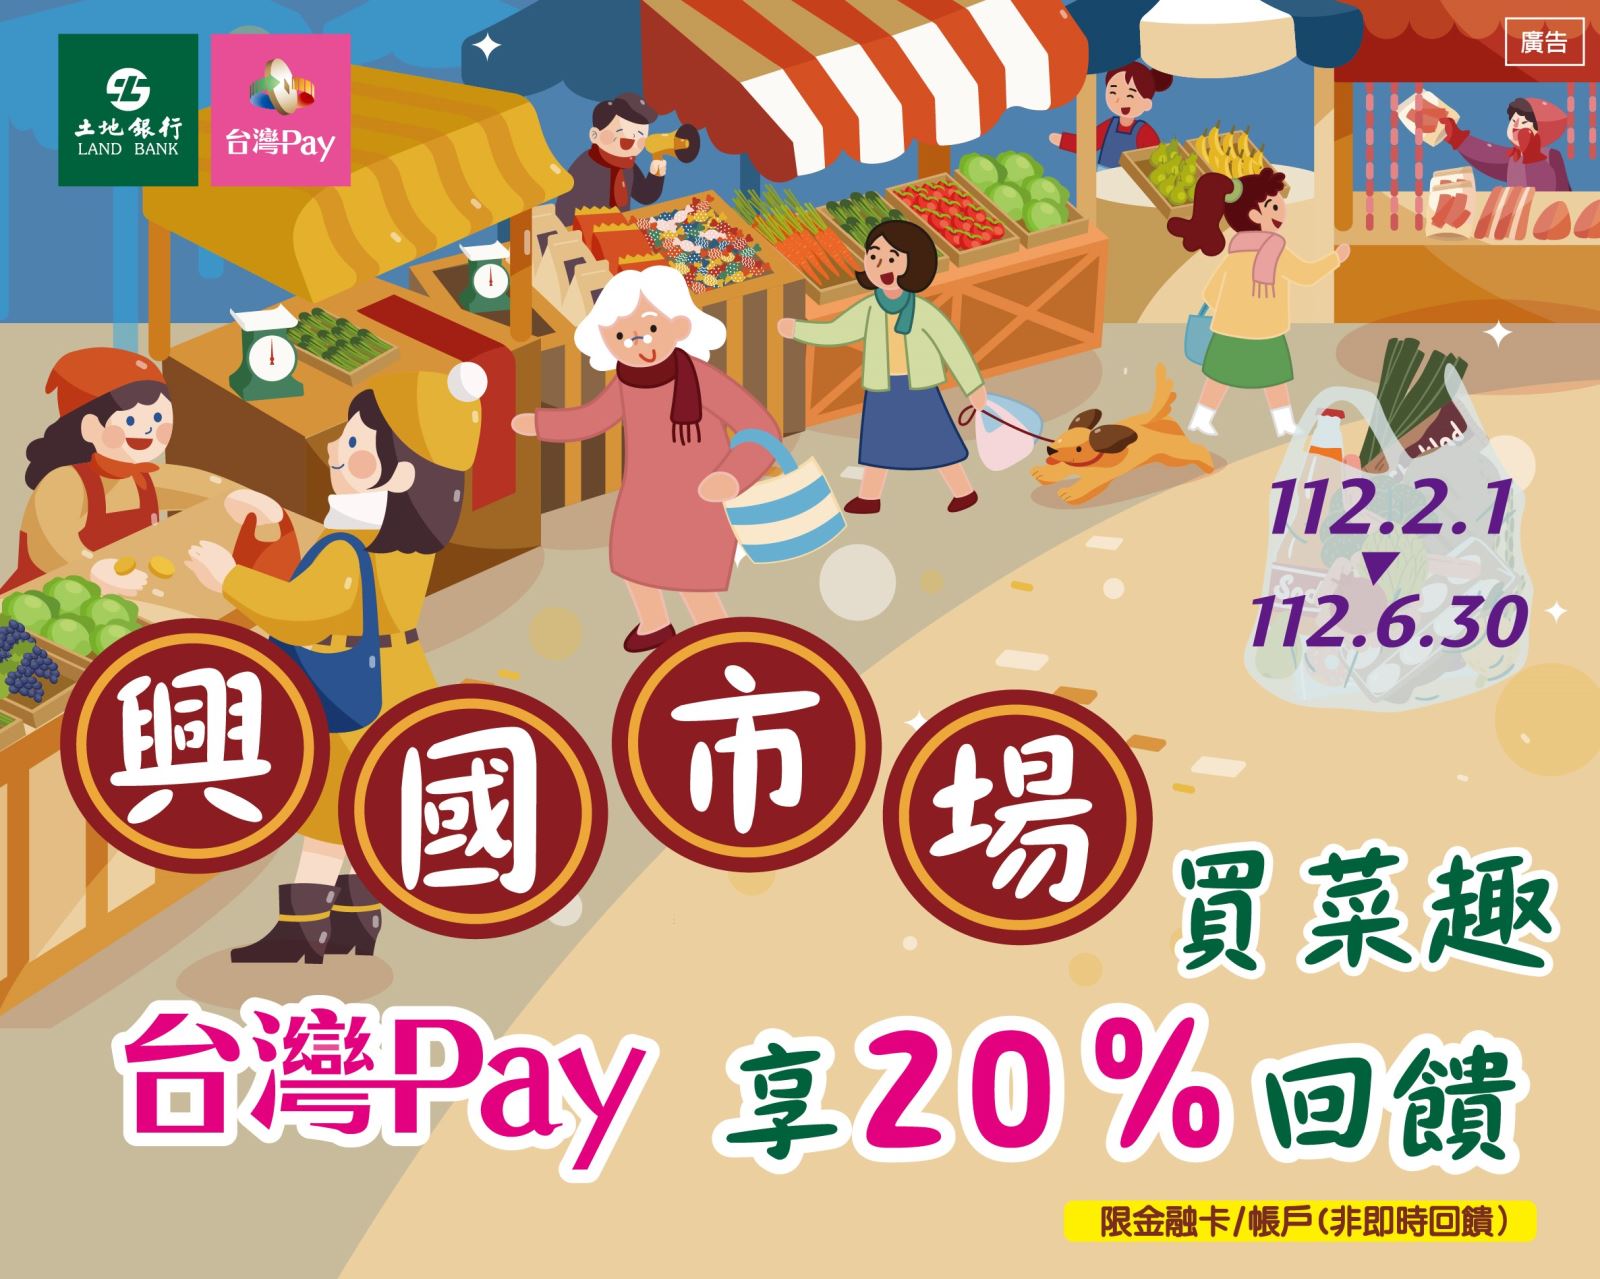 用戶於活動期間至活動地點消費，並使用「台灣 Pay」掃碼支付成功者，單筆消費不限金額可享20%之現金回饋